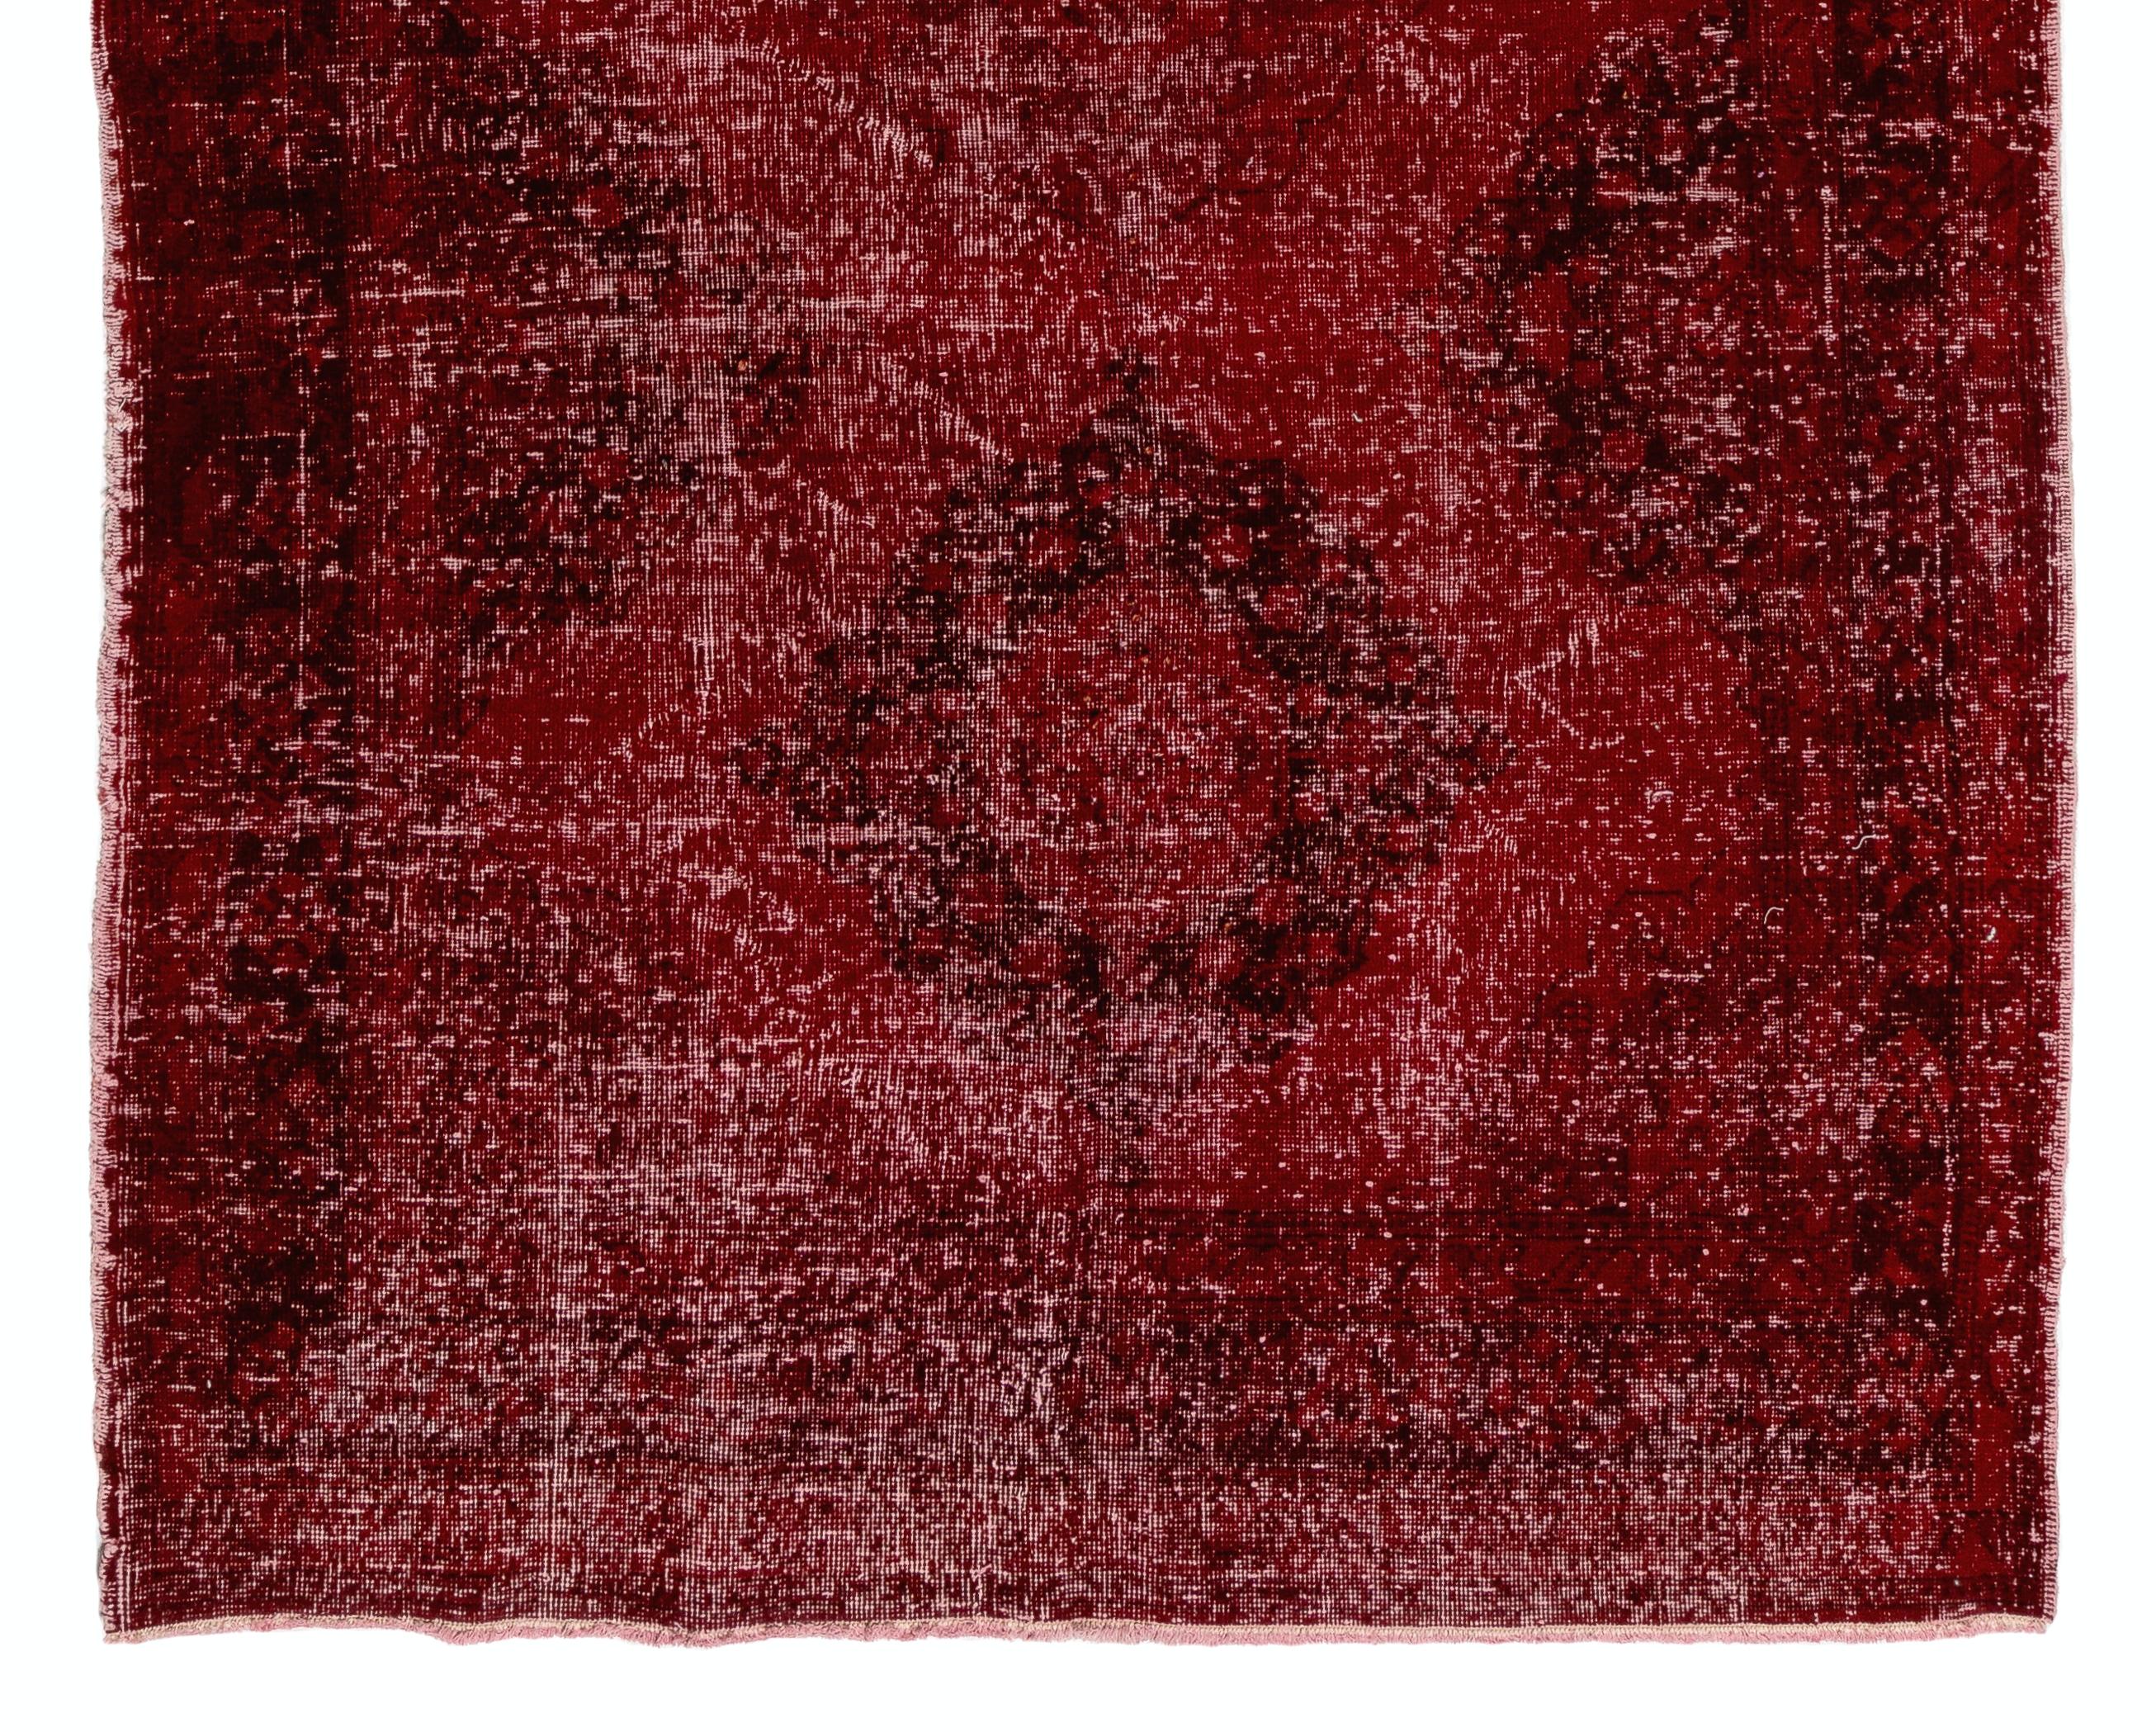 4.8x12.2 Ft Handmade Turkish Runner Rug in Burgundy Red, Modern Corridor Carpet In Good Condition For Sale In Philadelphia, PA